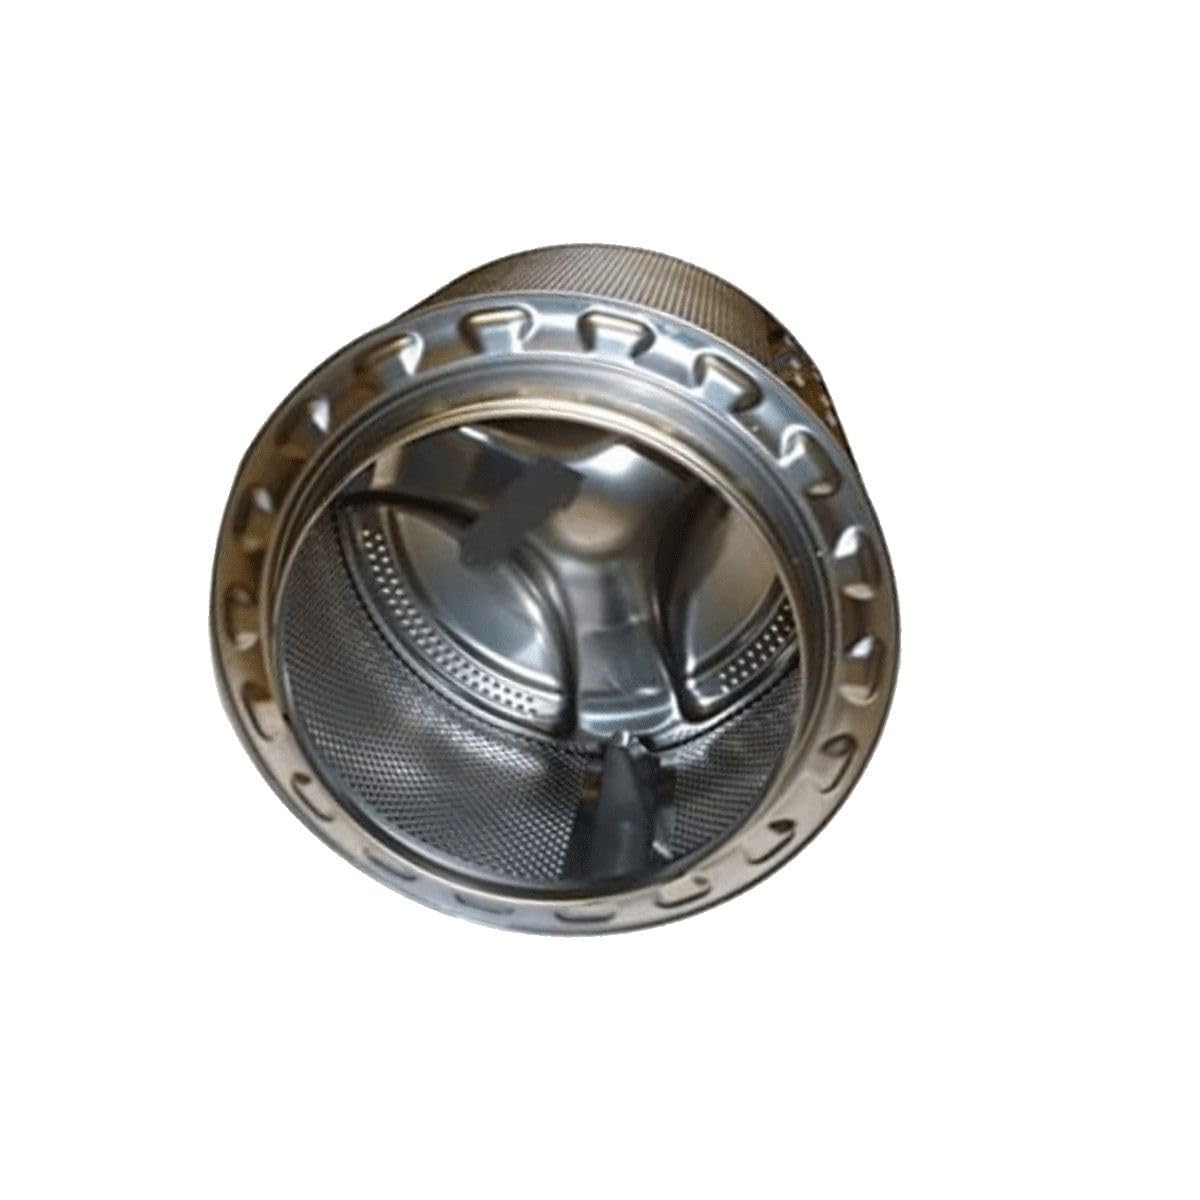 Sidex – Trommeleinheit mit Kreuzschlitz 1200 PS-03 KPL für Waschmaschine Sidex Gorenje